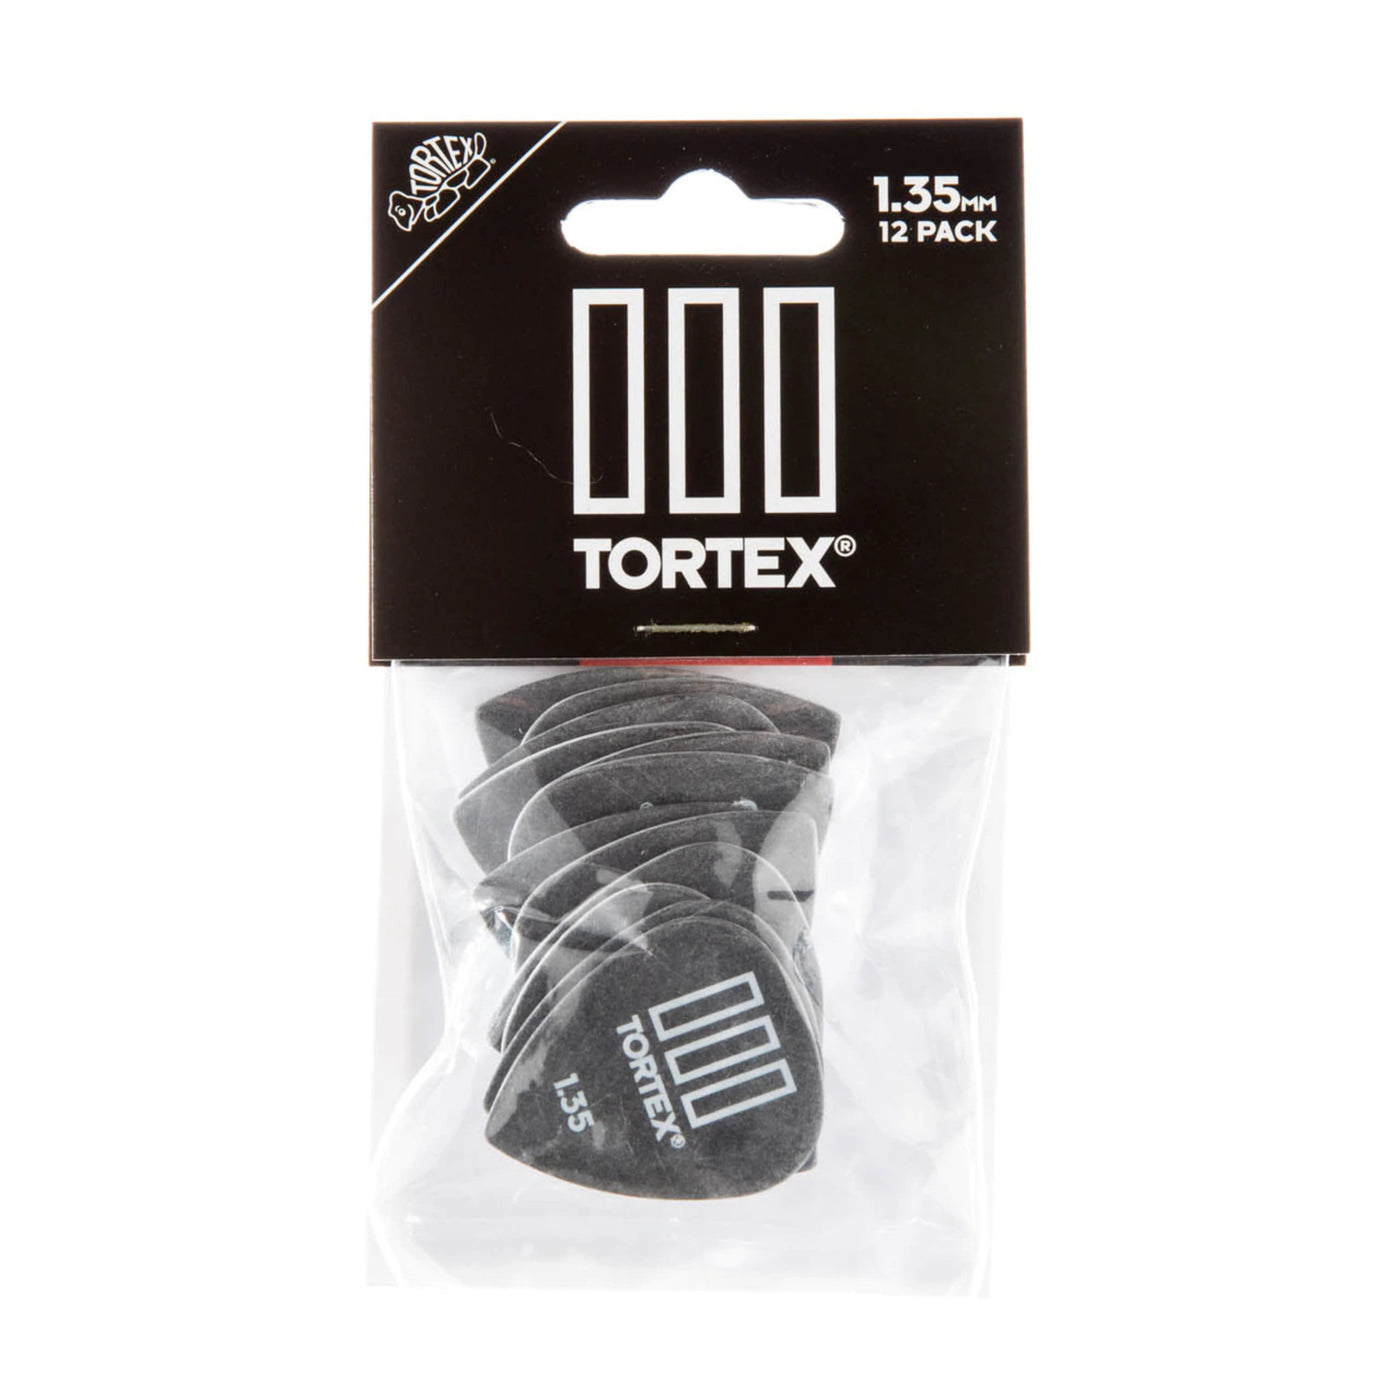 Dunlop 462P135 Tortex Iii Pick 1.35mm- 12 Pack